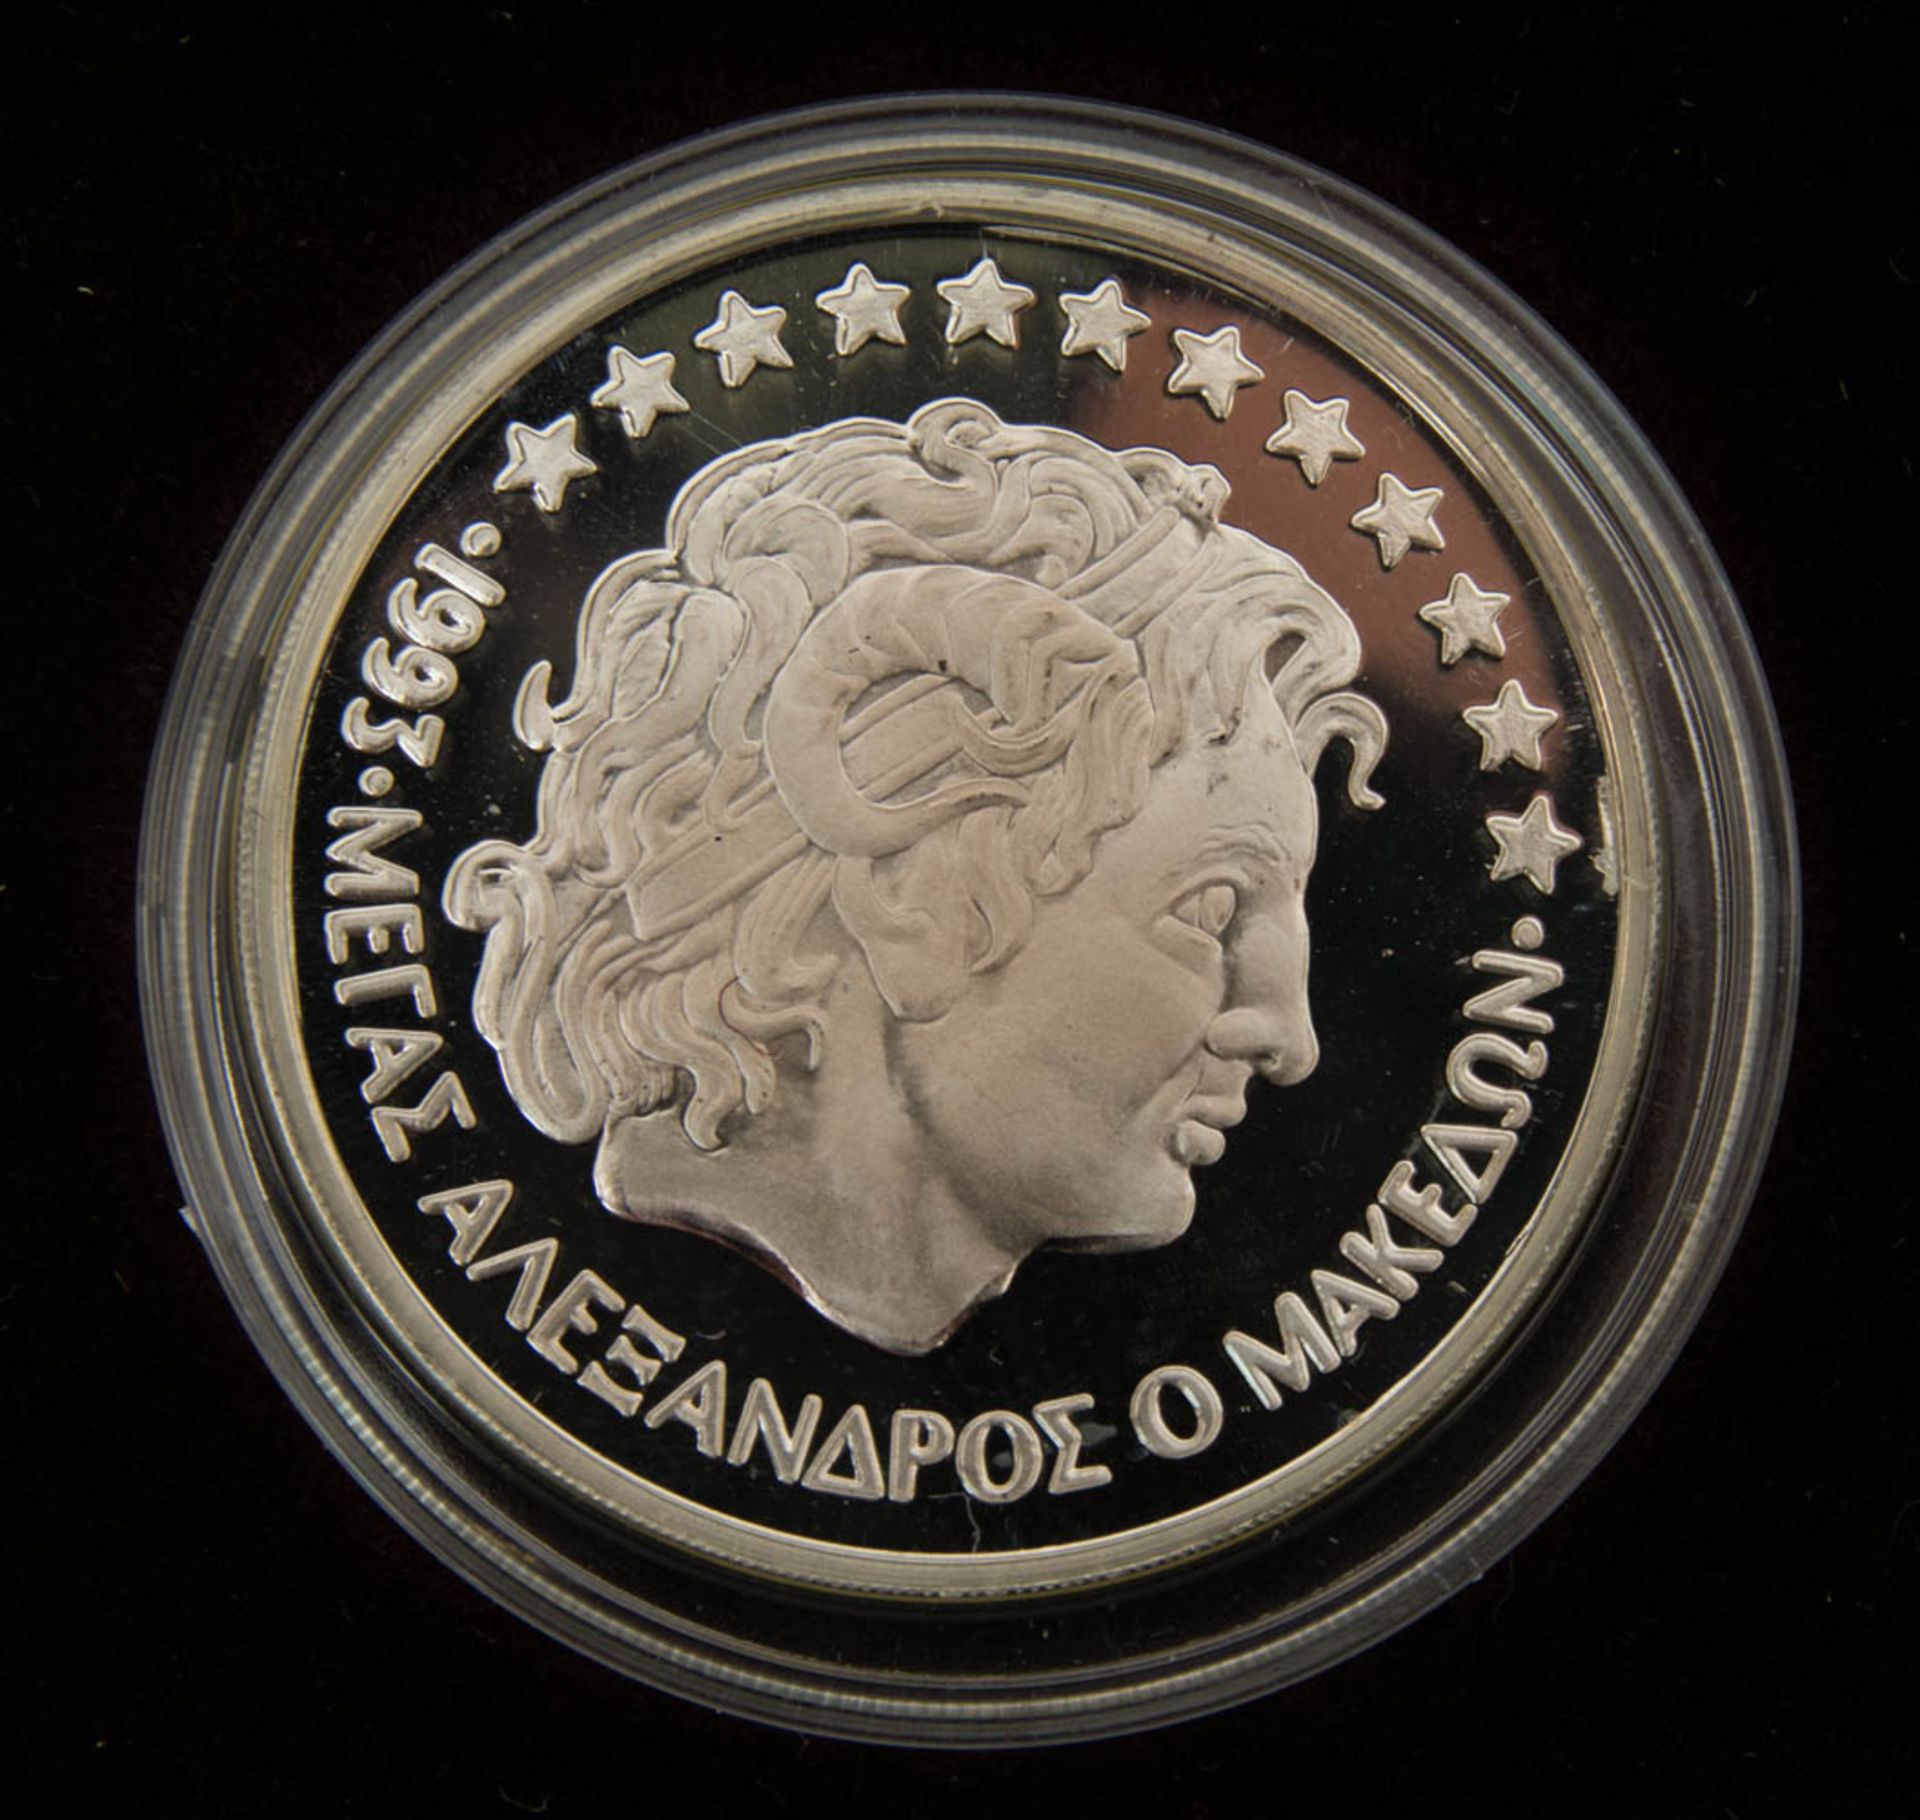 Silbermünz-/Medaillensammlung Griechenland.9 Stück.Mit zahlreichen Piedfortausga - Bild 2 aus 3